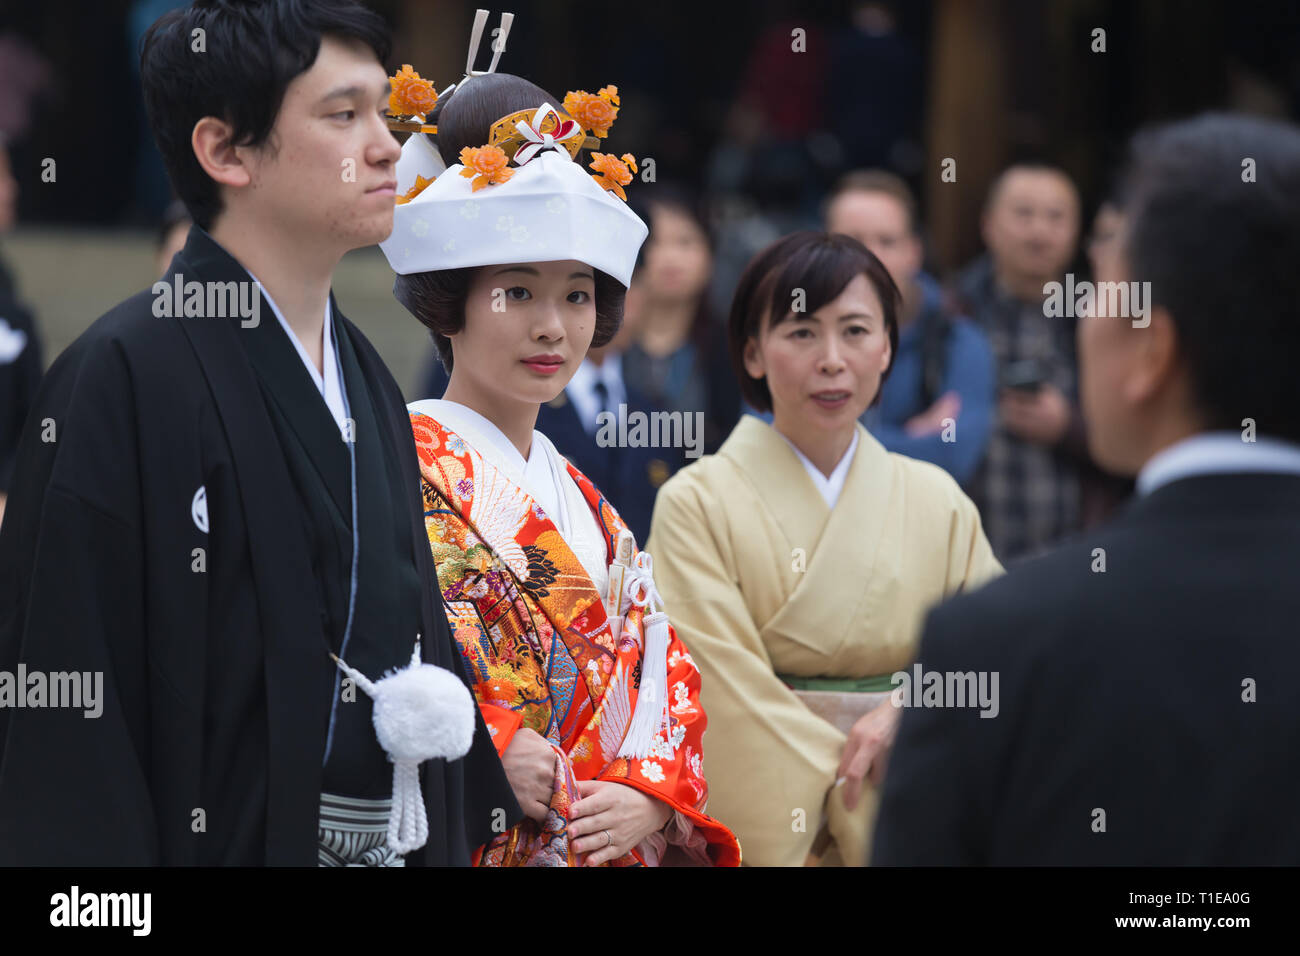 Junge glückliche Bräutigam und Braut während traditionelle japanische Hochzeit Zeremonie am Meiji-jingu Schrein in Tokio, Japan, am 23. November 2013. Stockfoto